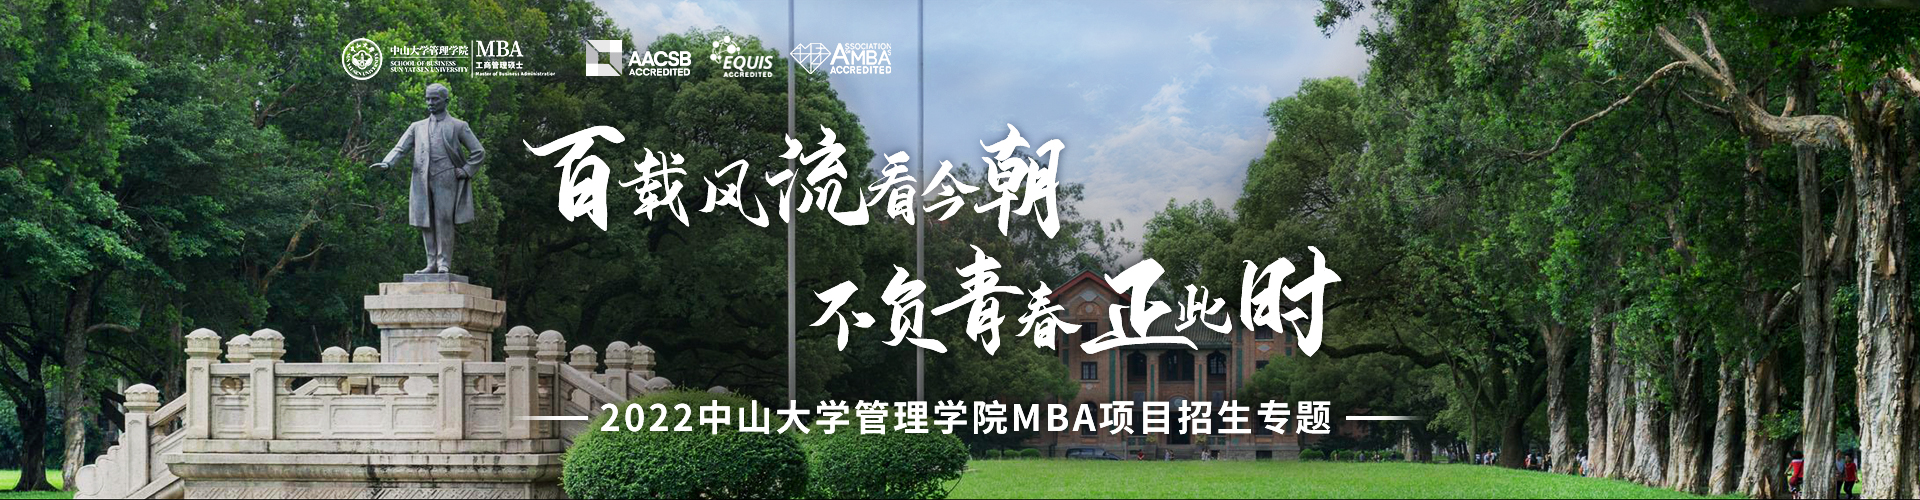 中山大学管理学院2022MBA招生专题